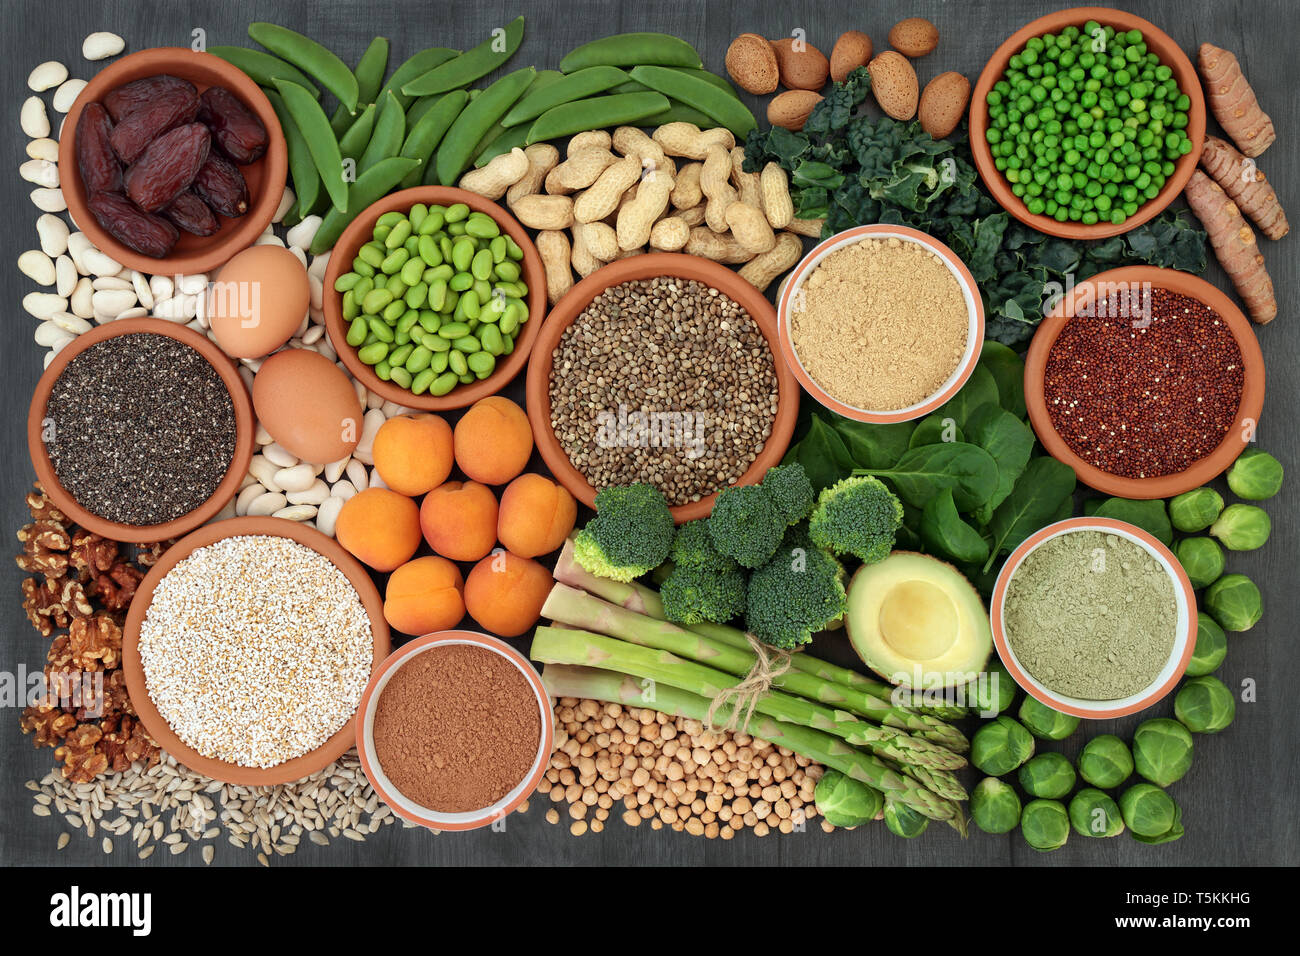 Health Food high in Protein mit Hülsenfrüchte, Gemüse, Trockenobst, Getreide, Milchprodukte, zu ergänzen, zu Pulver, Samen und Nüsse. Stockfoto